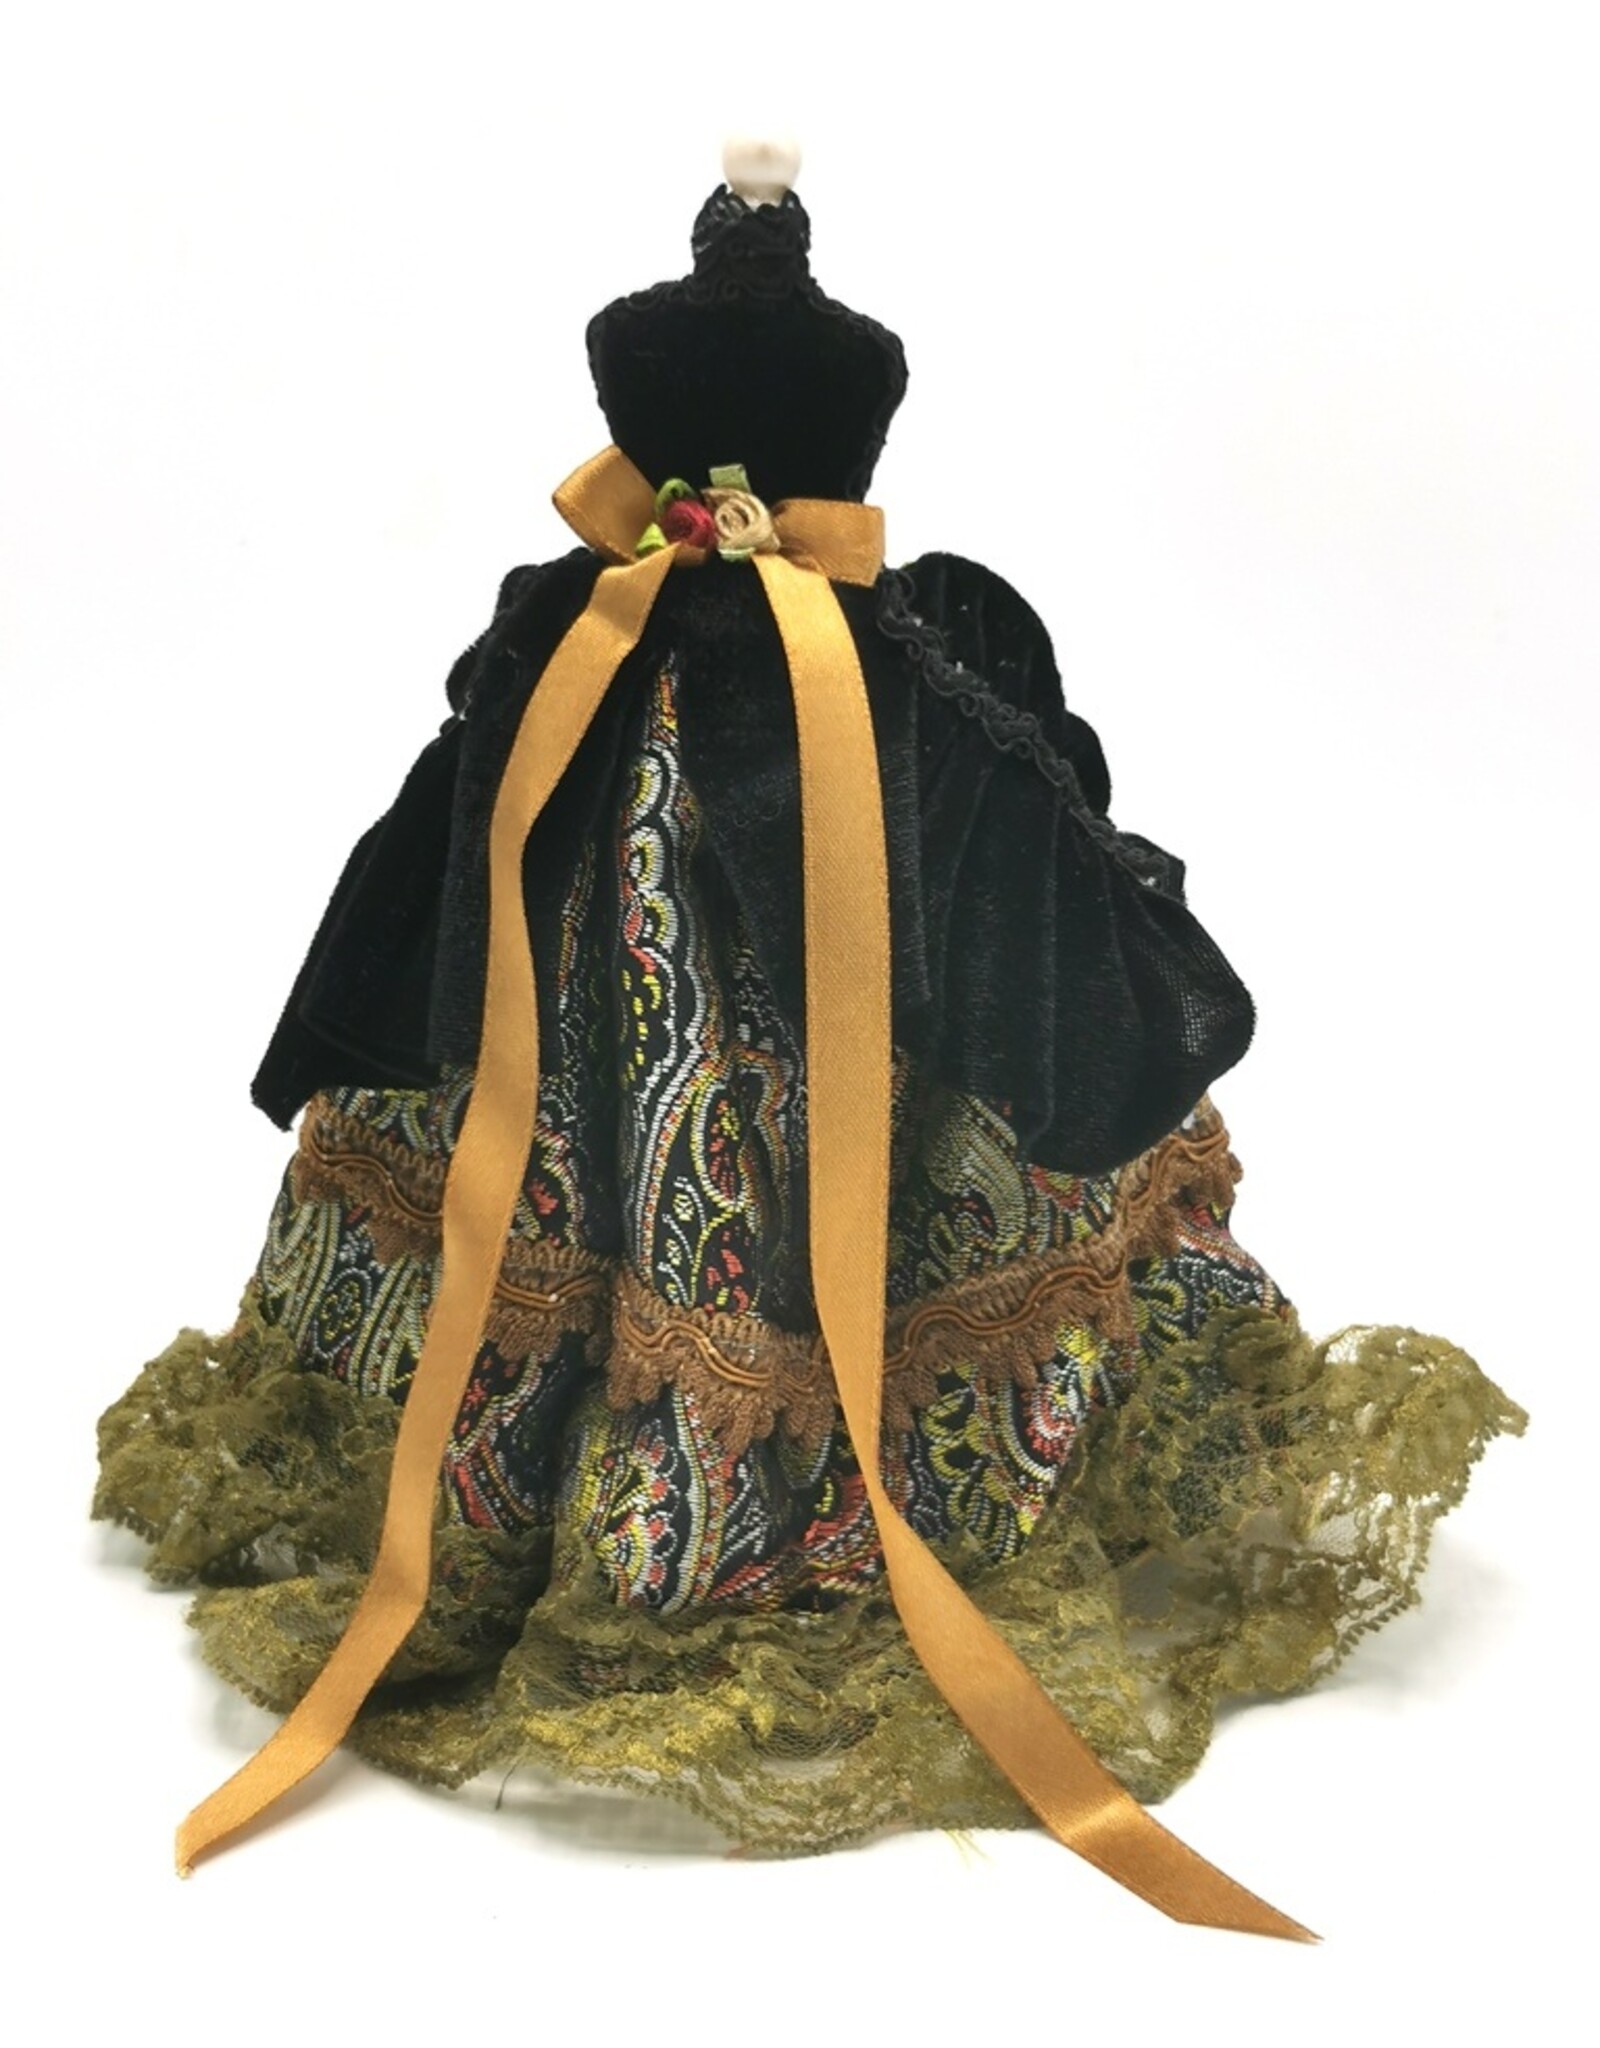 Trukado Giftware & Lifestyle - Victorian Dress Decorative ornament  small